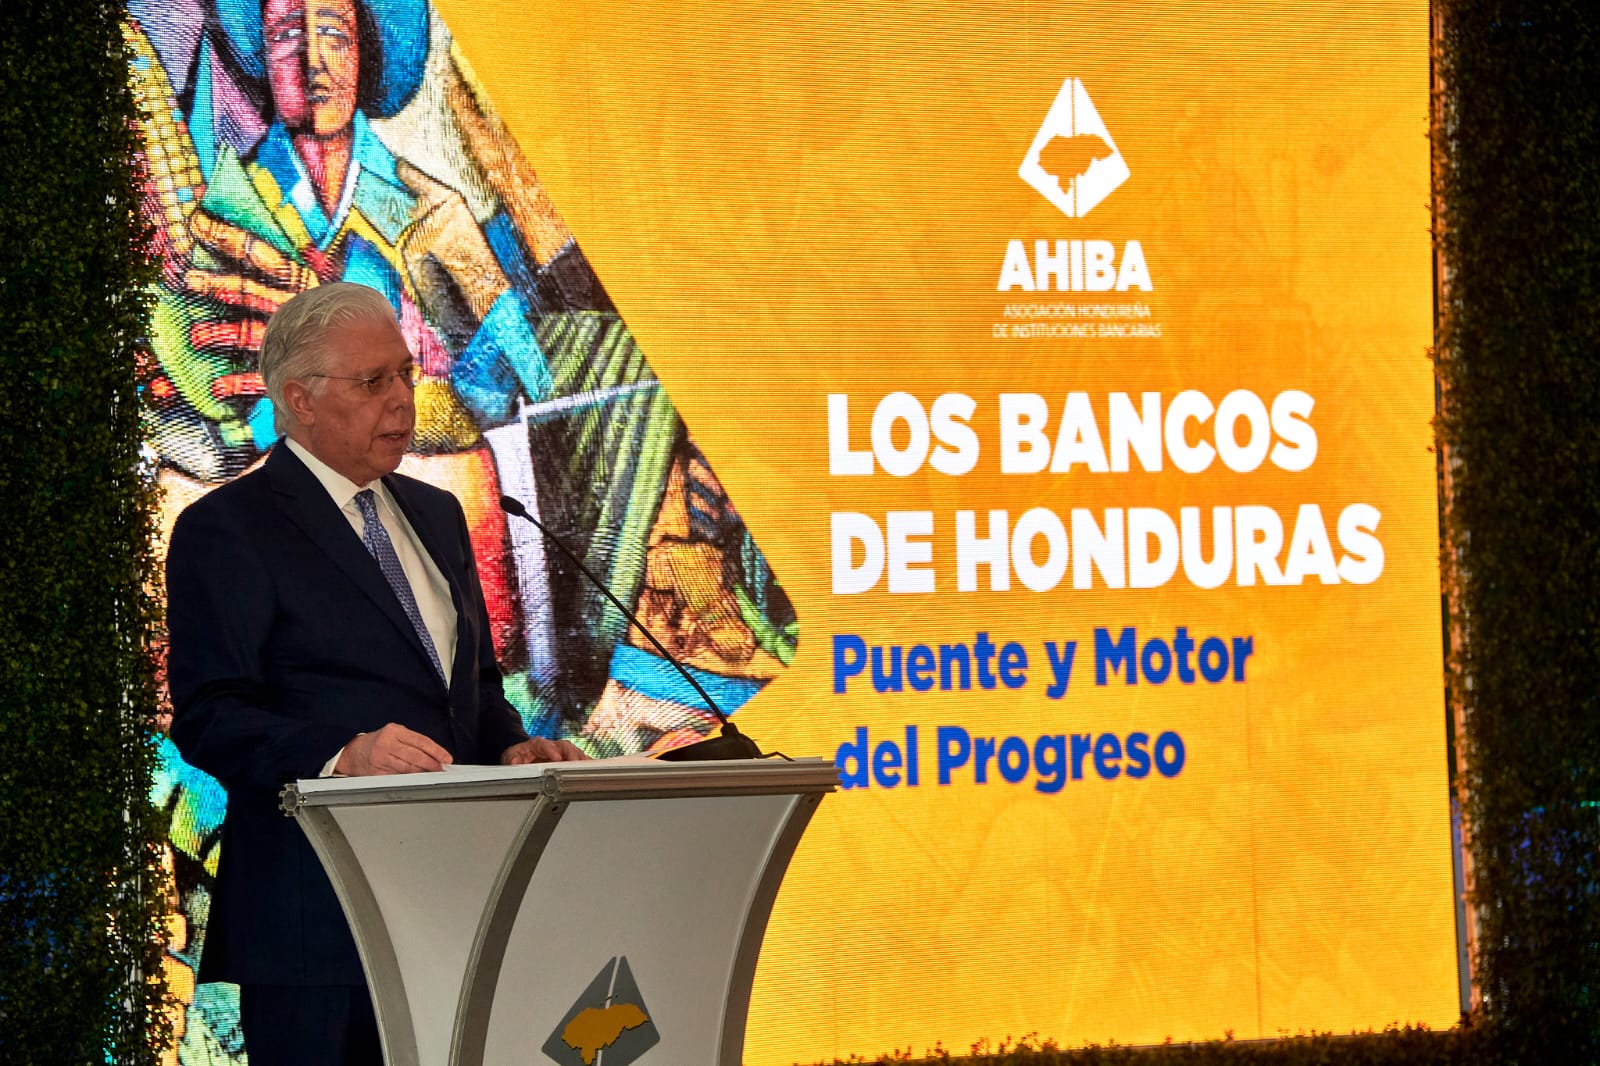 Bancos de Honduras coinciden en ser puente y motor del progreso